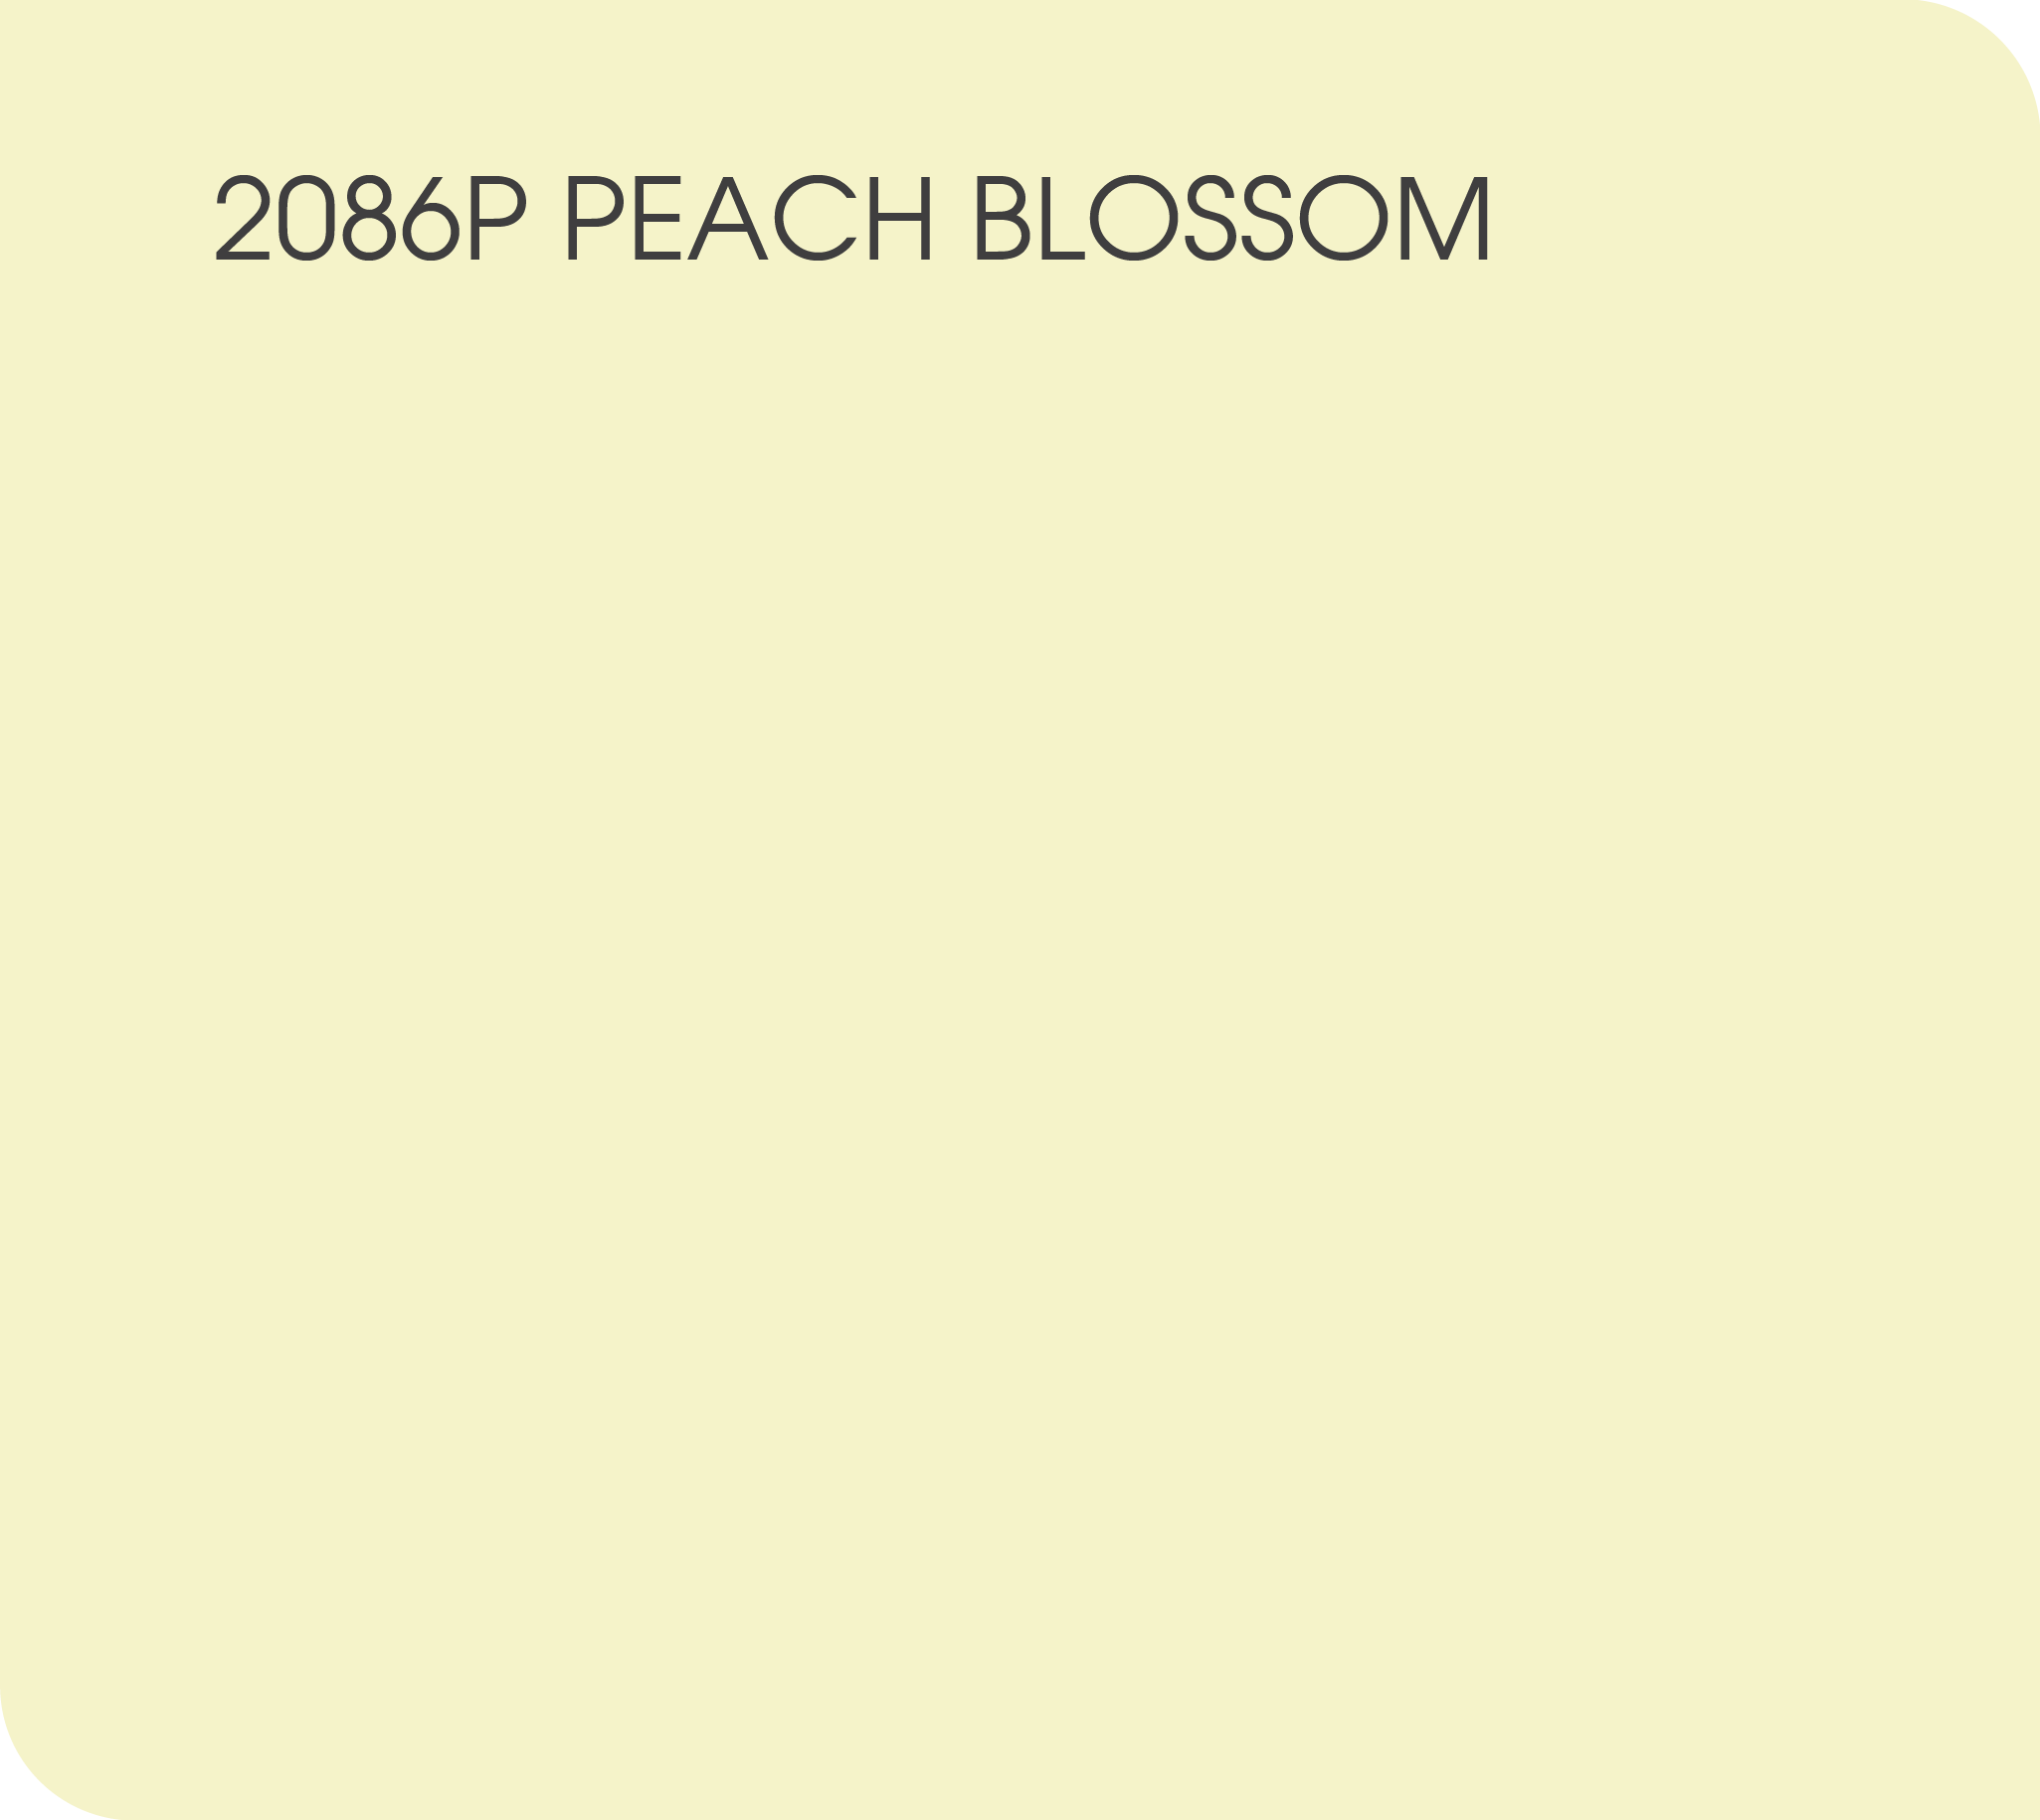 2086P peach blossom